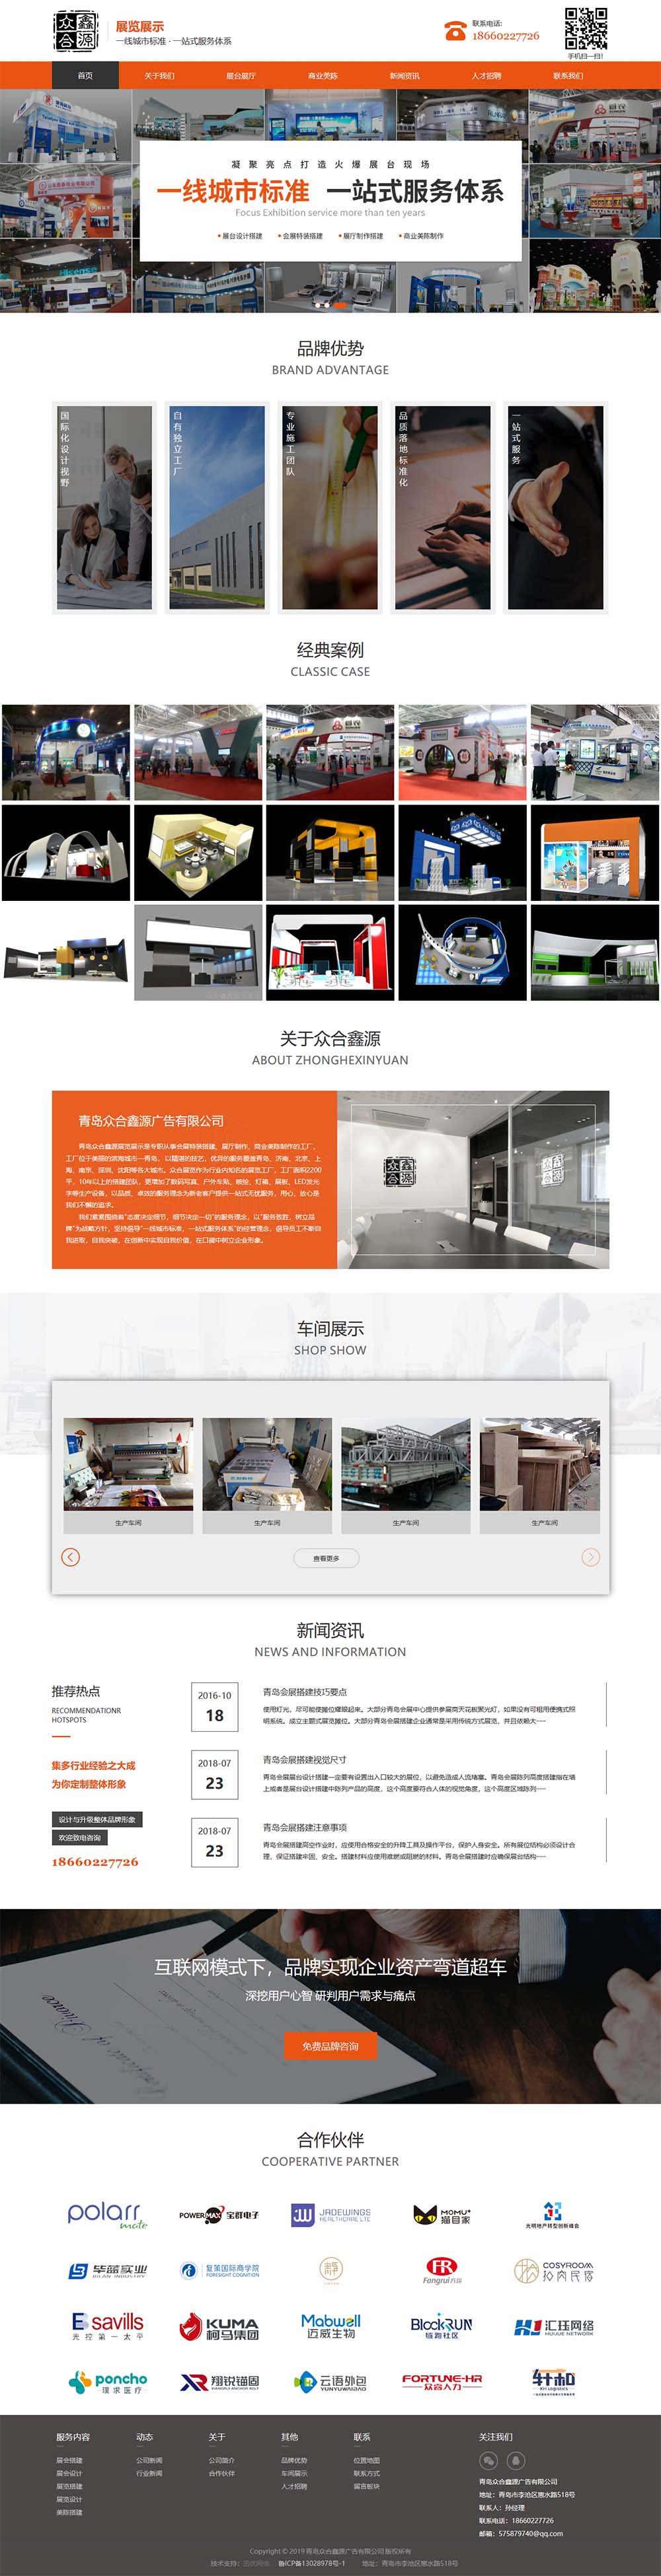 青島網站設計